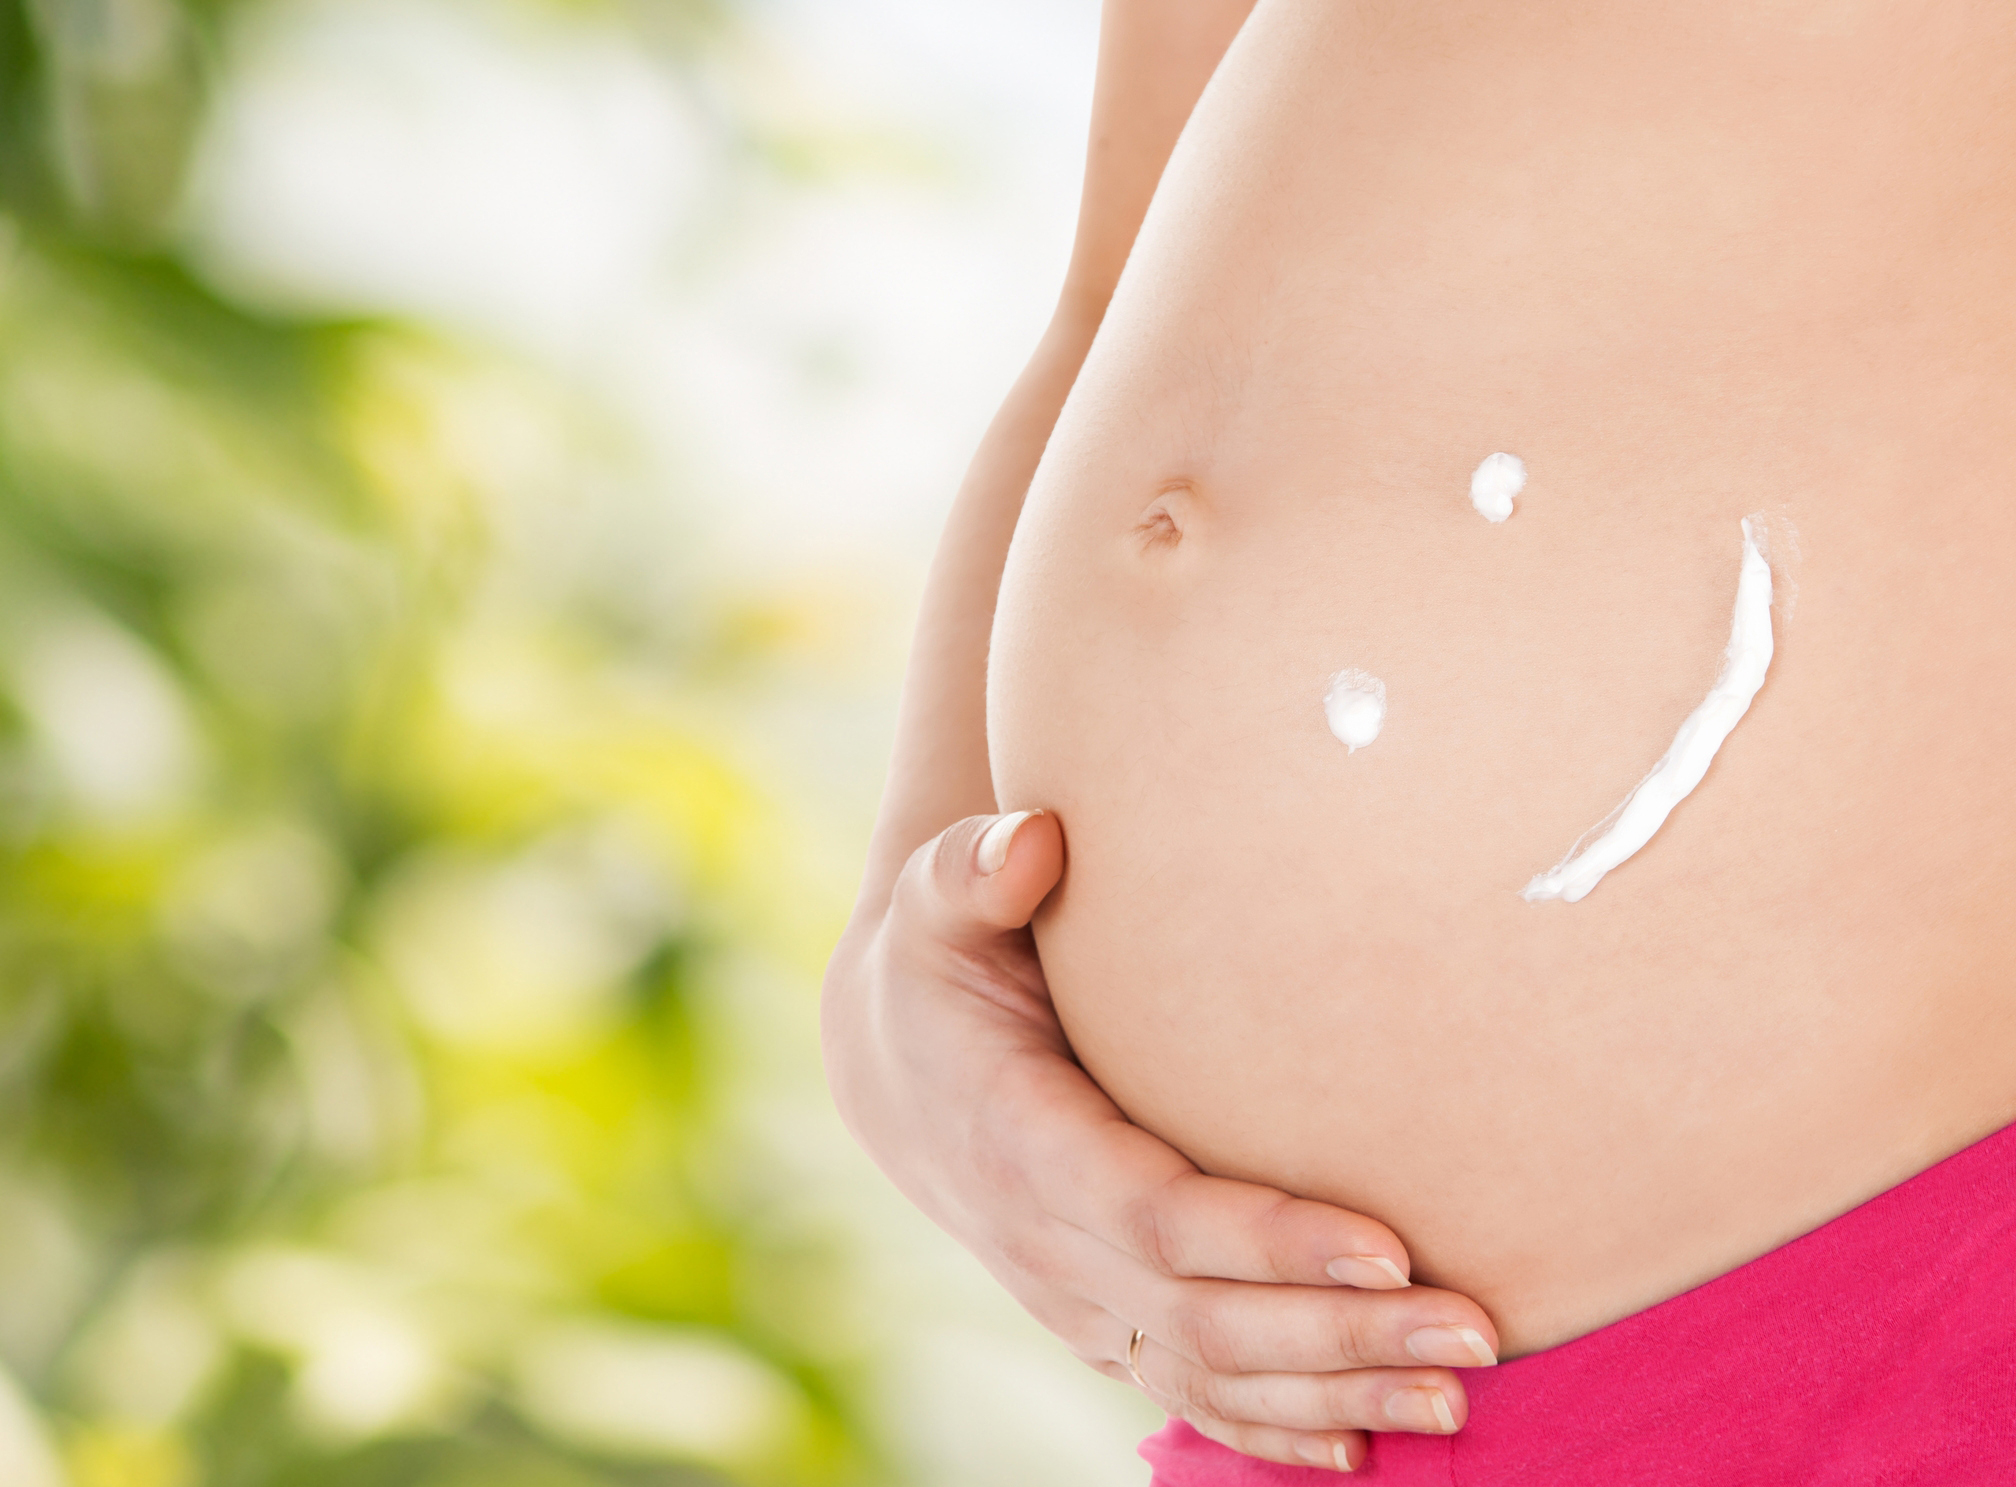 Creme elasticizzanti per il corpo in gravidanza: le migliori per evitare smagliature